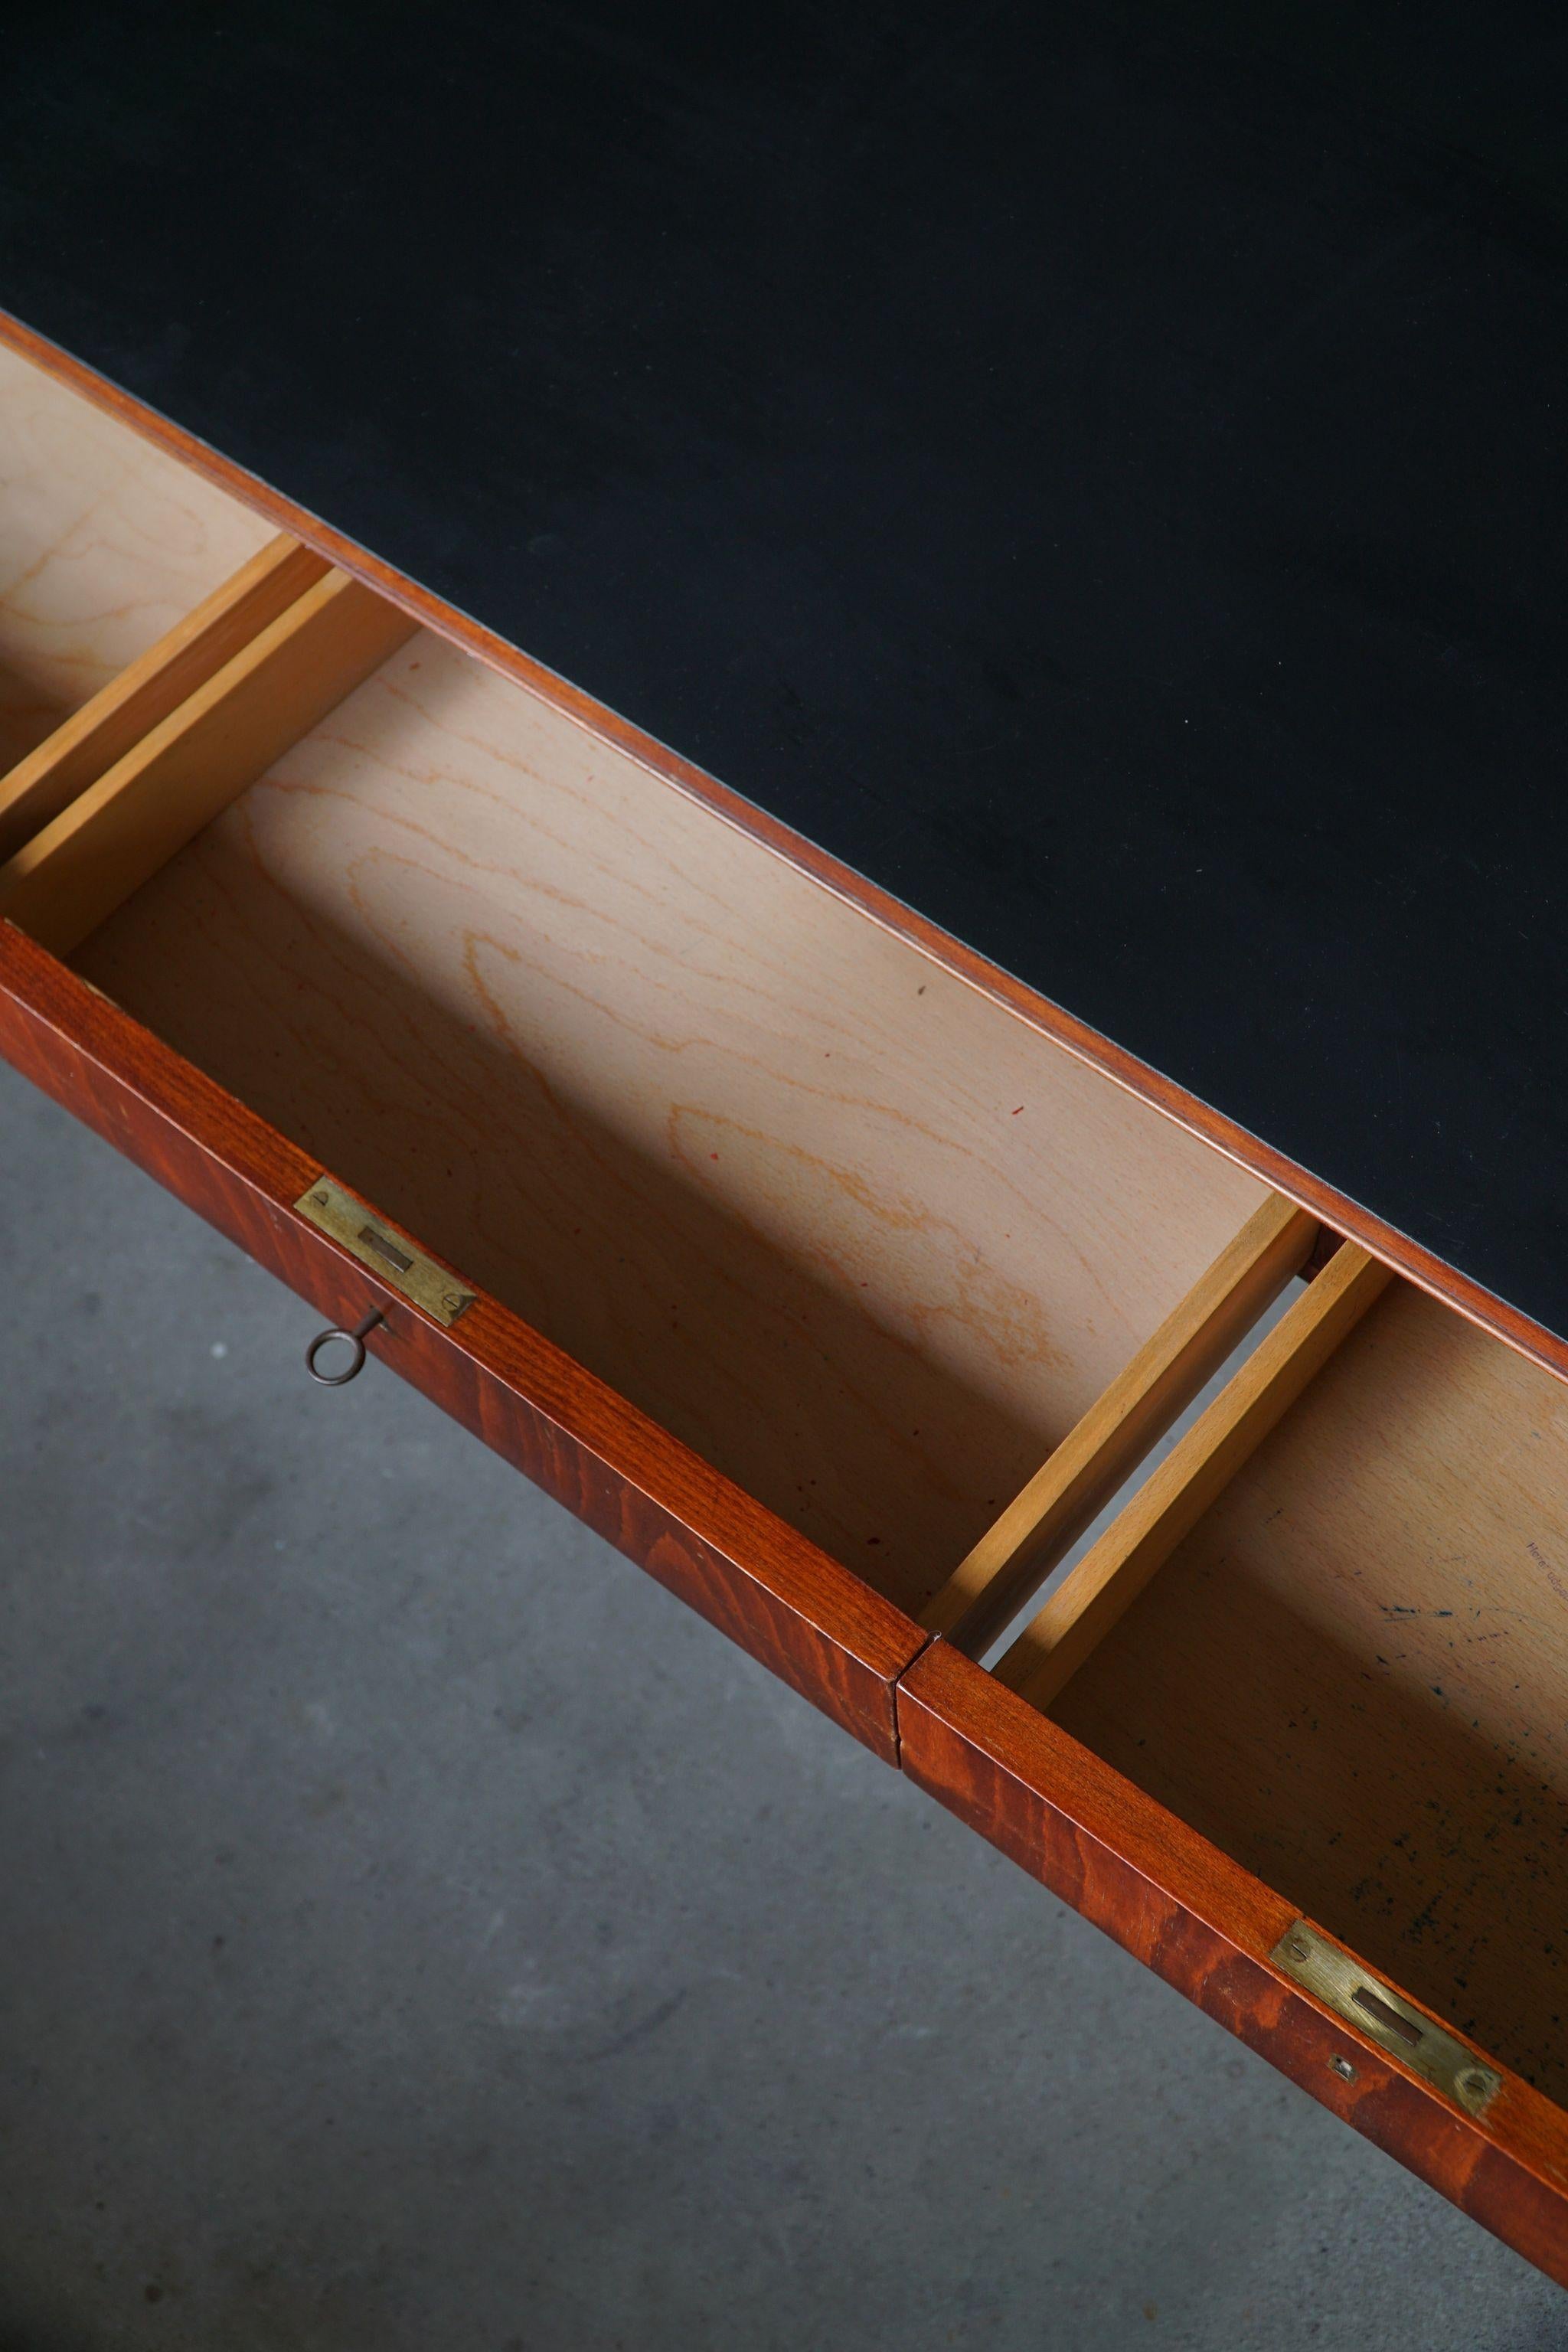 Ole Wanscher, Danish Freestanding Desk Made by Fritz Hansen, 